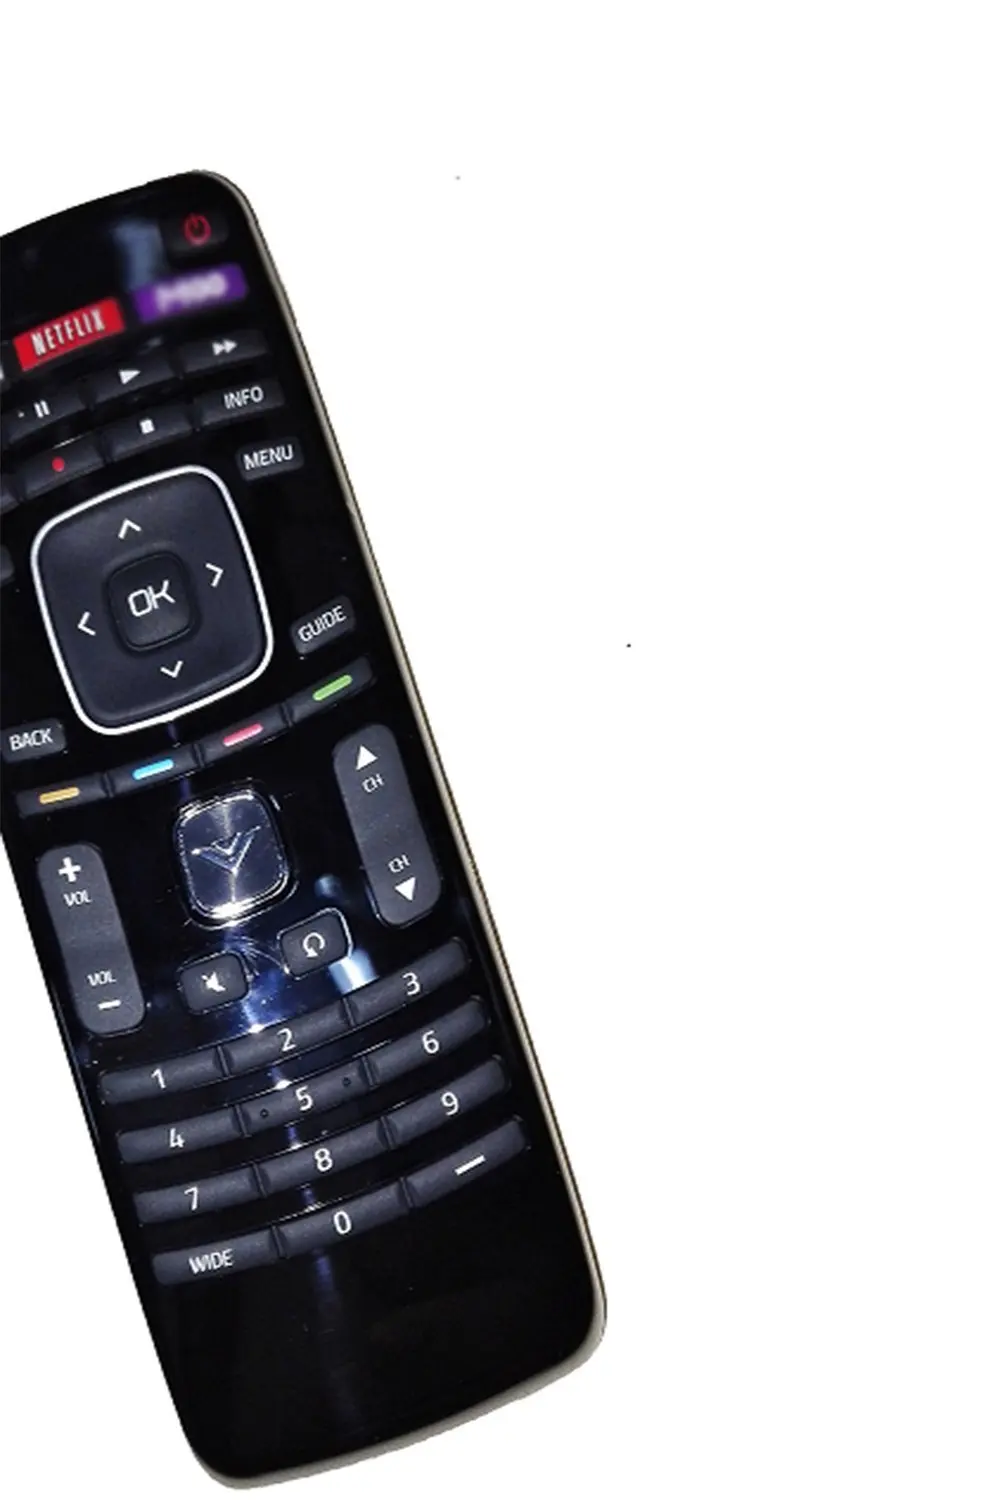 Buy New Xrt010 Remote Control Fit For Vizio E420 A0 E420vse E390 A1